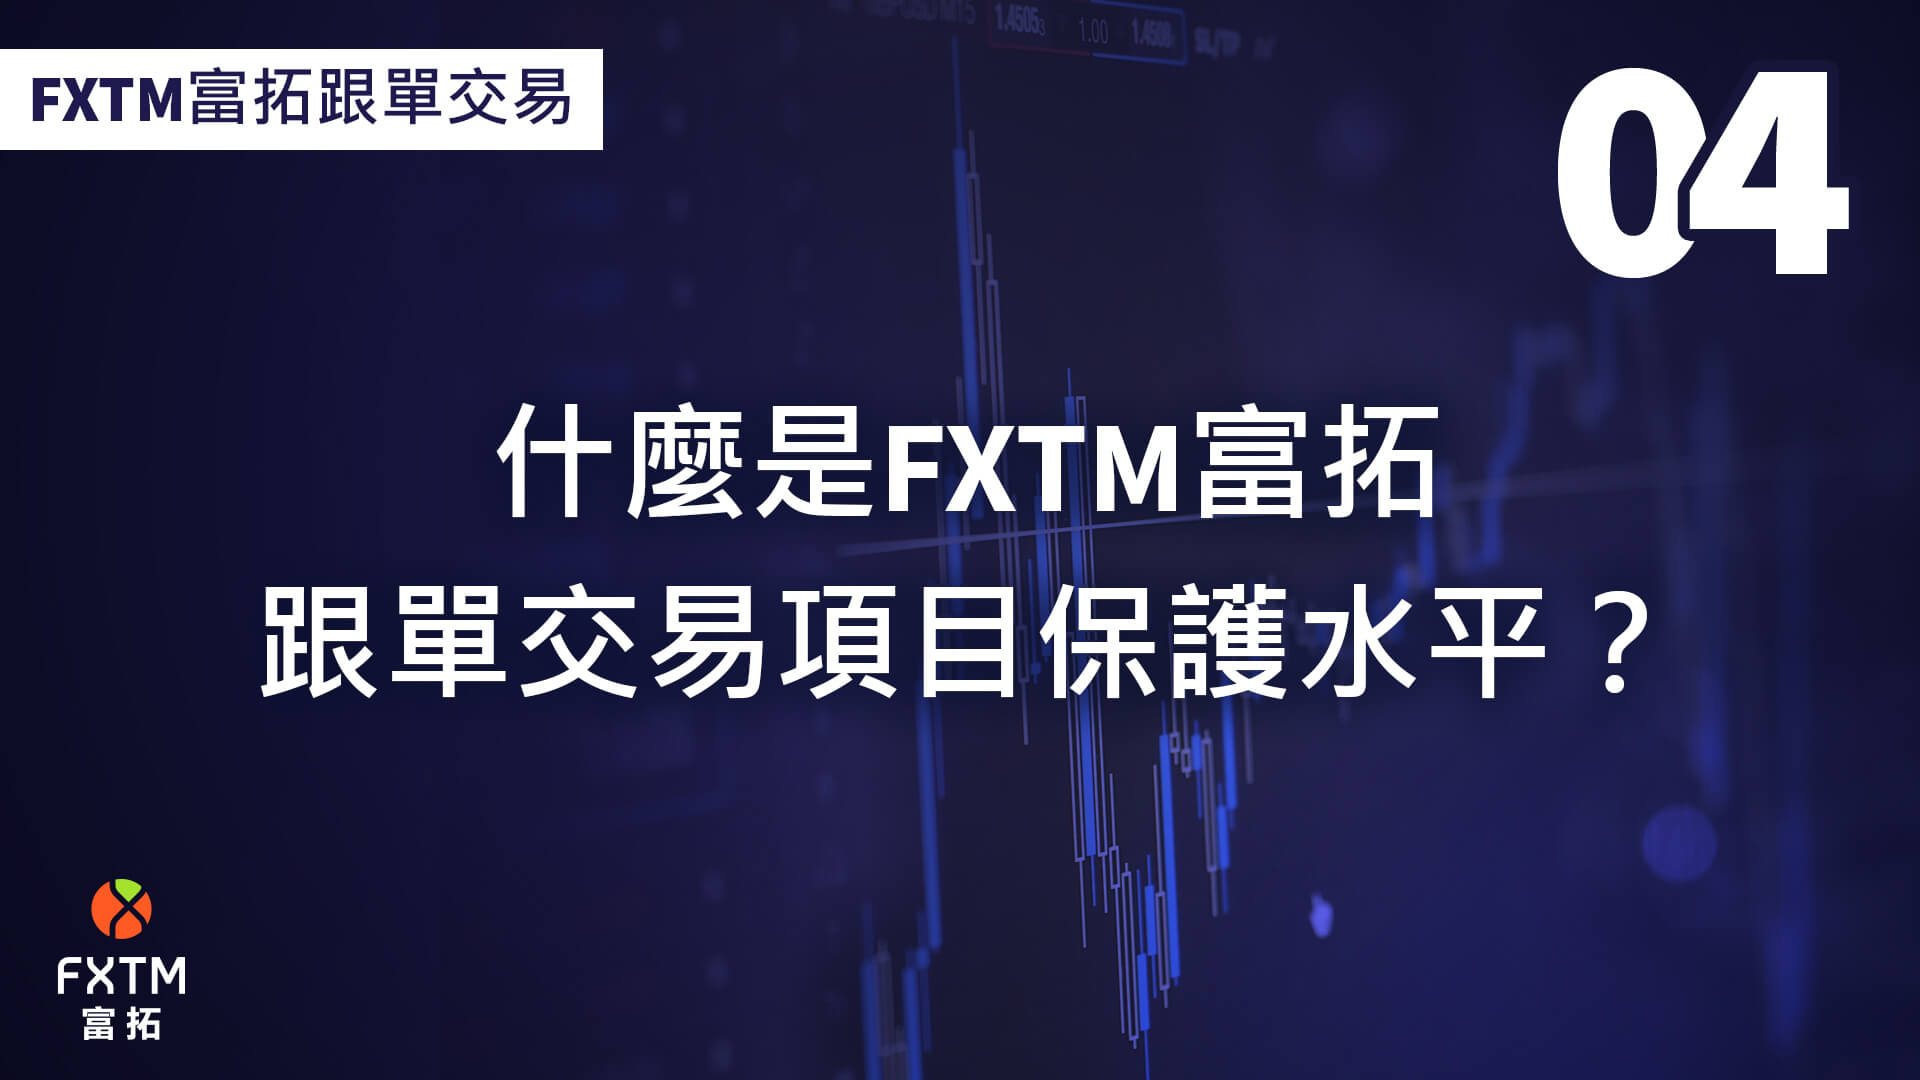 什麼是FXTM富拓跟單交易保護水平？ 